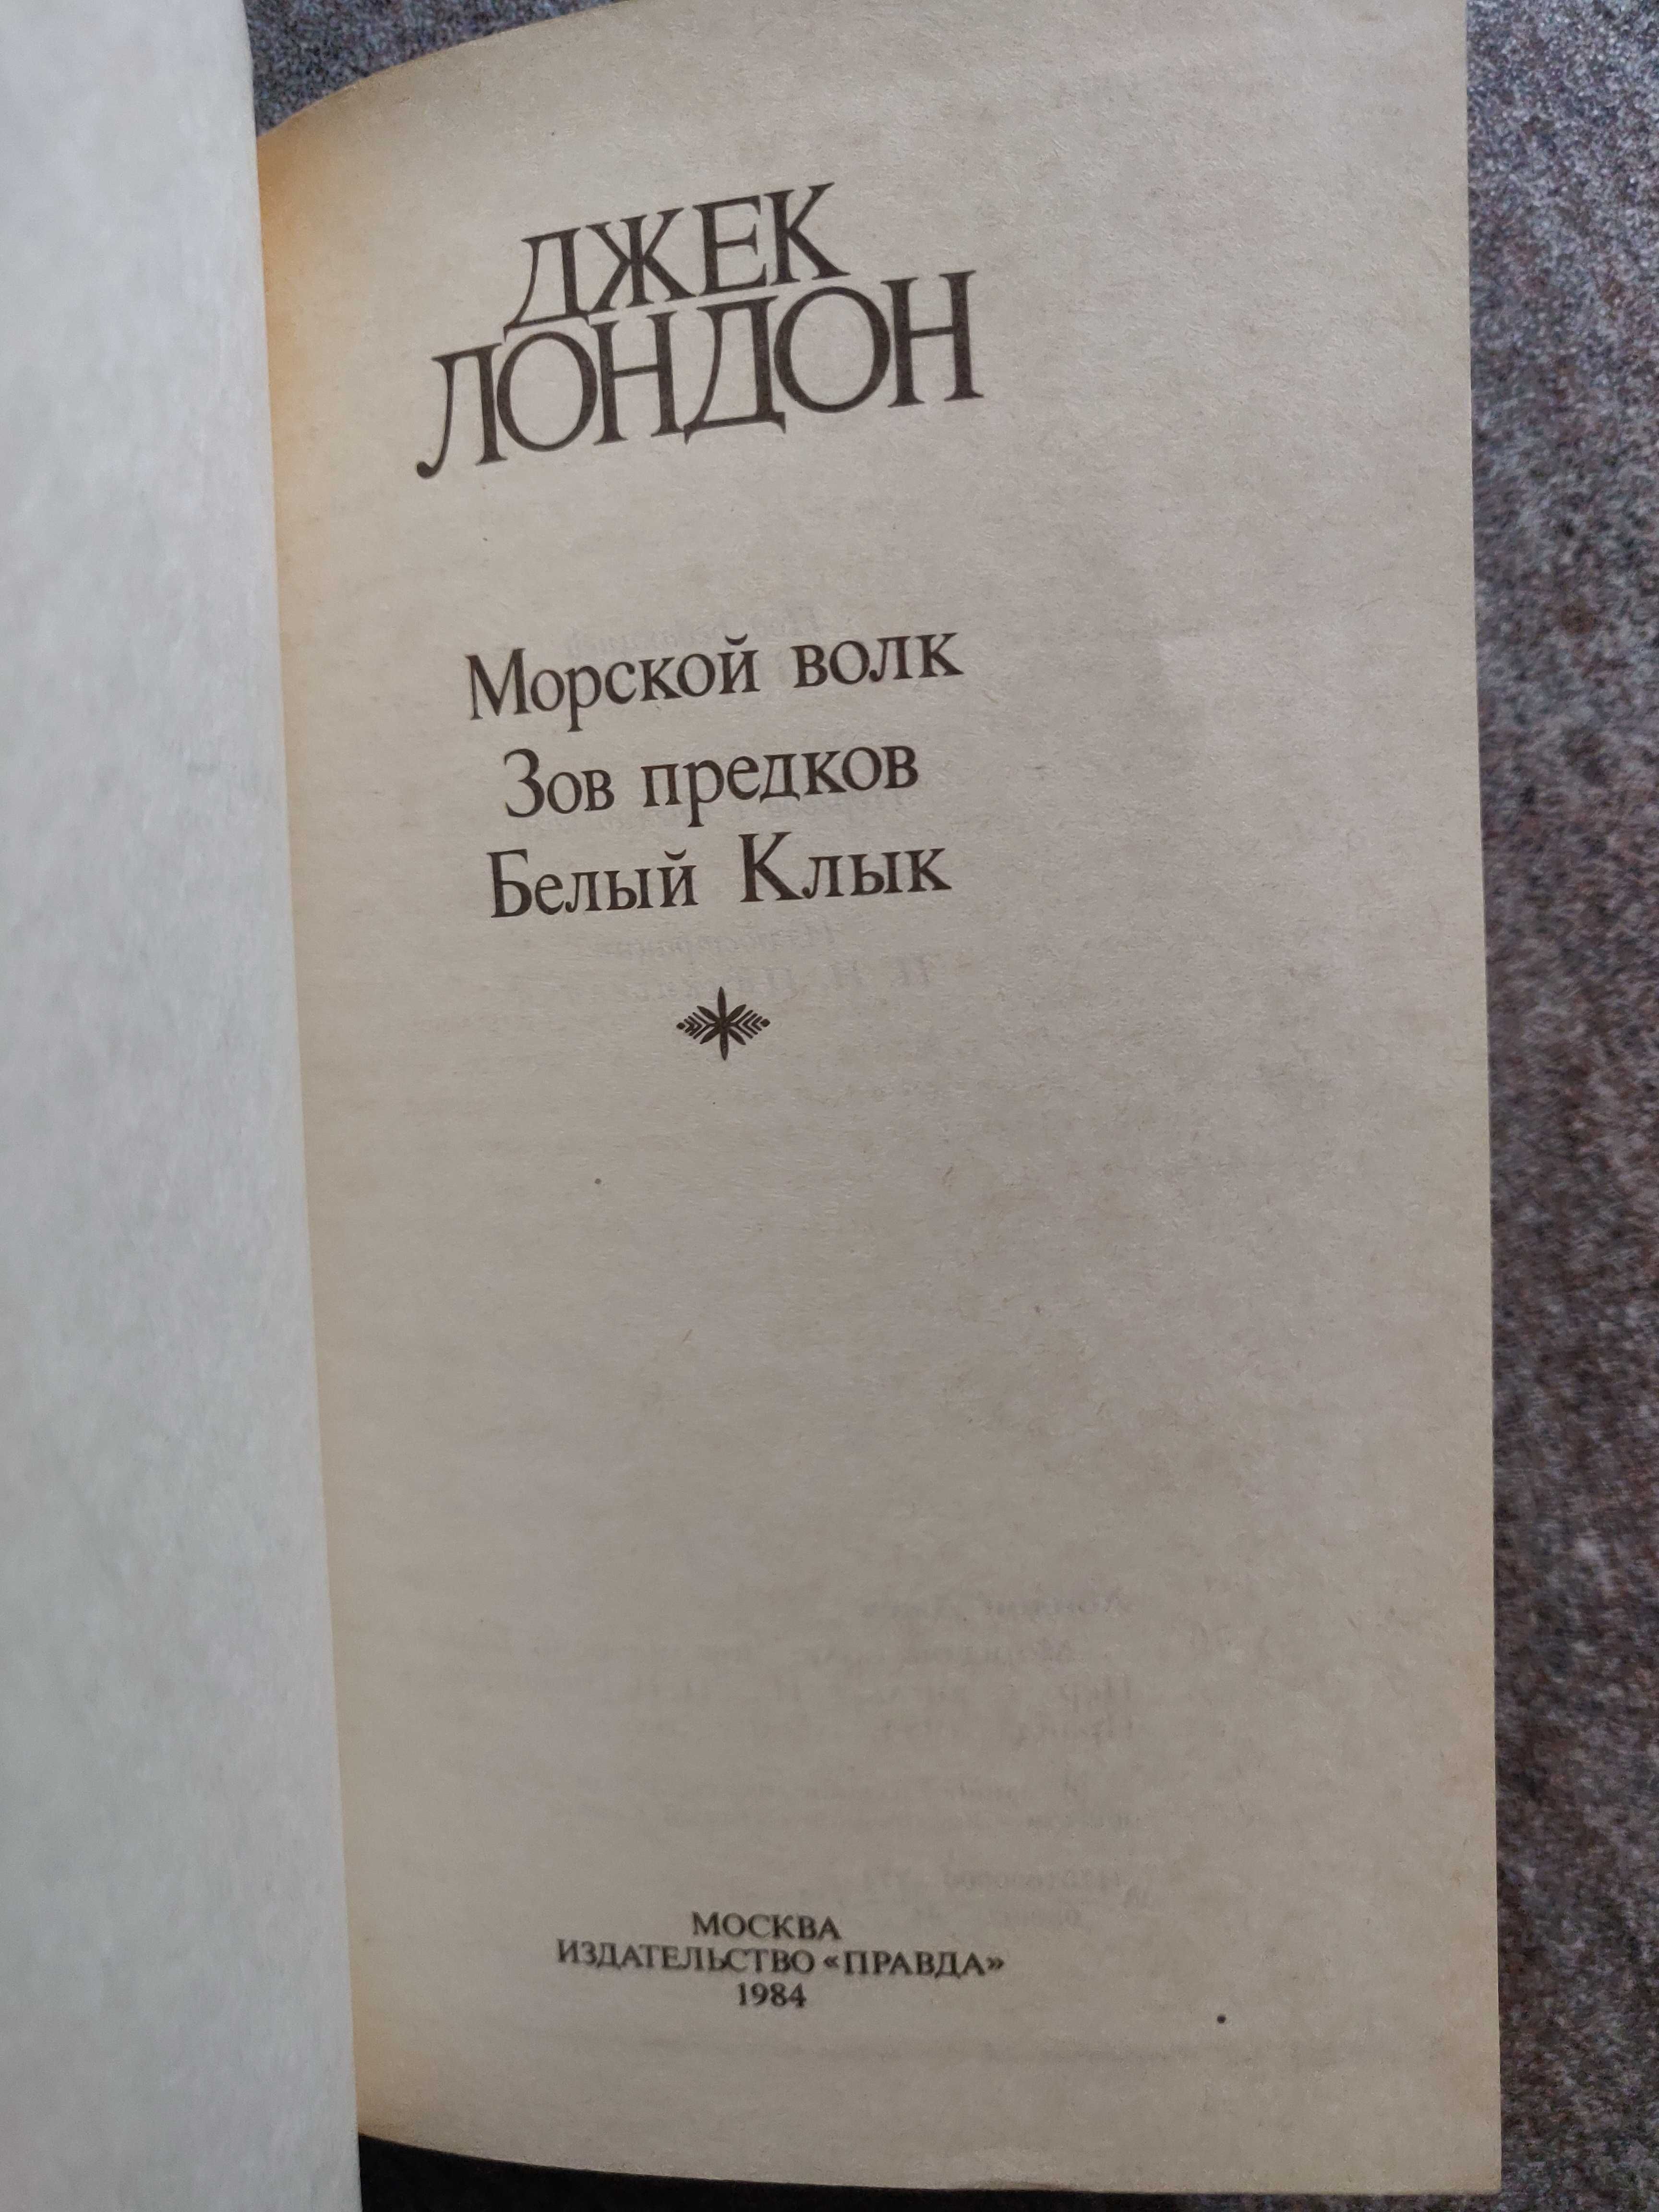 Джек Лондон. Собрание сочинений в 3 томах, 1984 г.